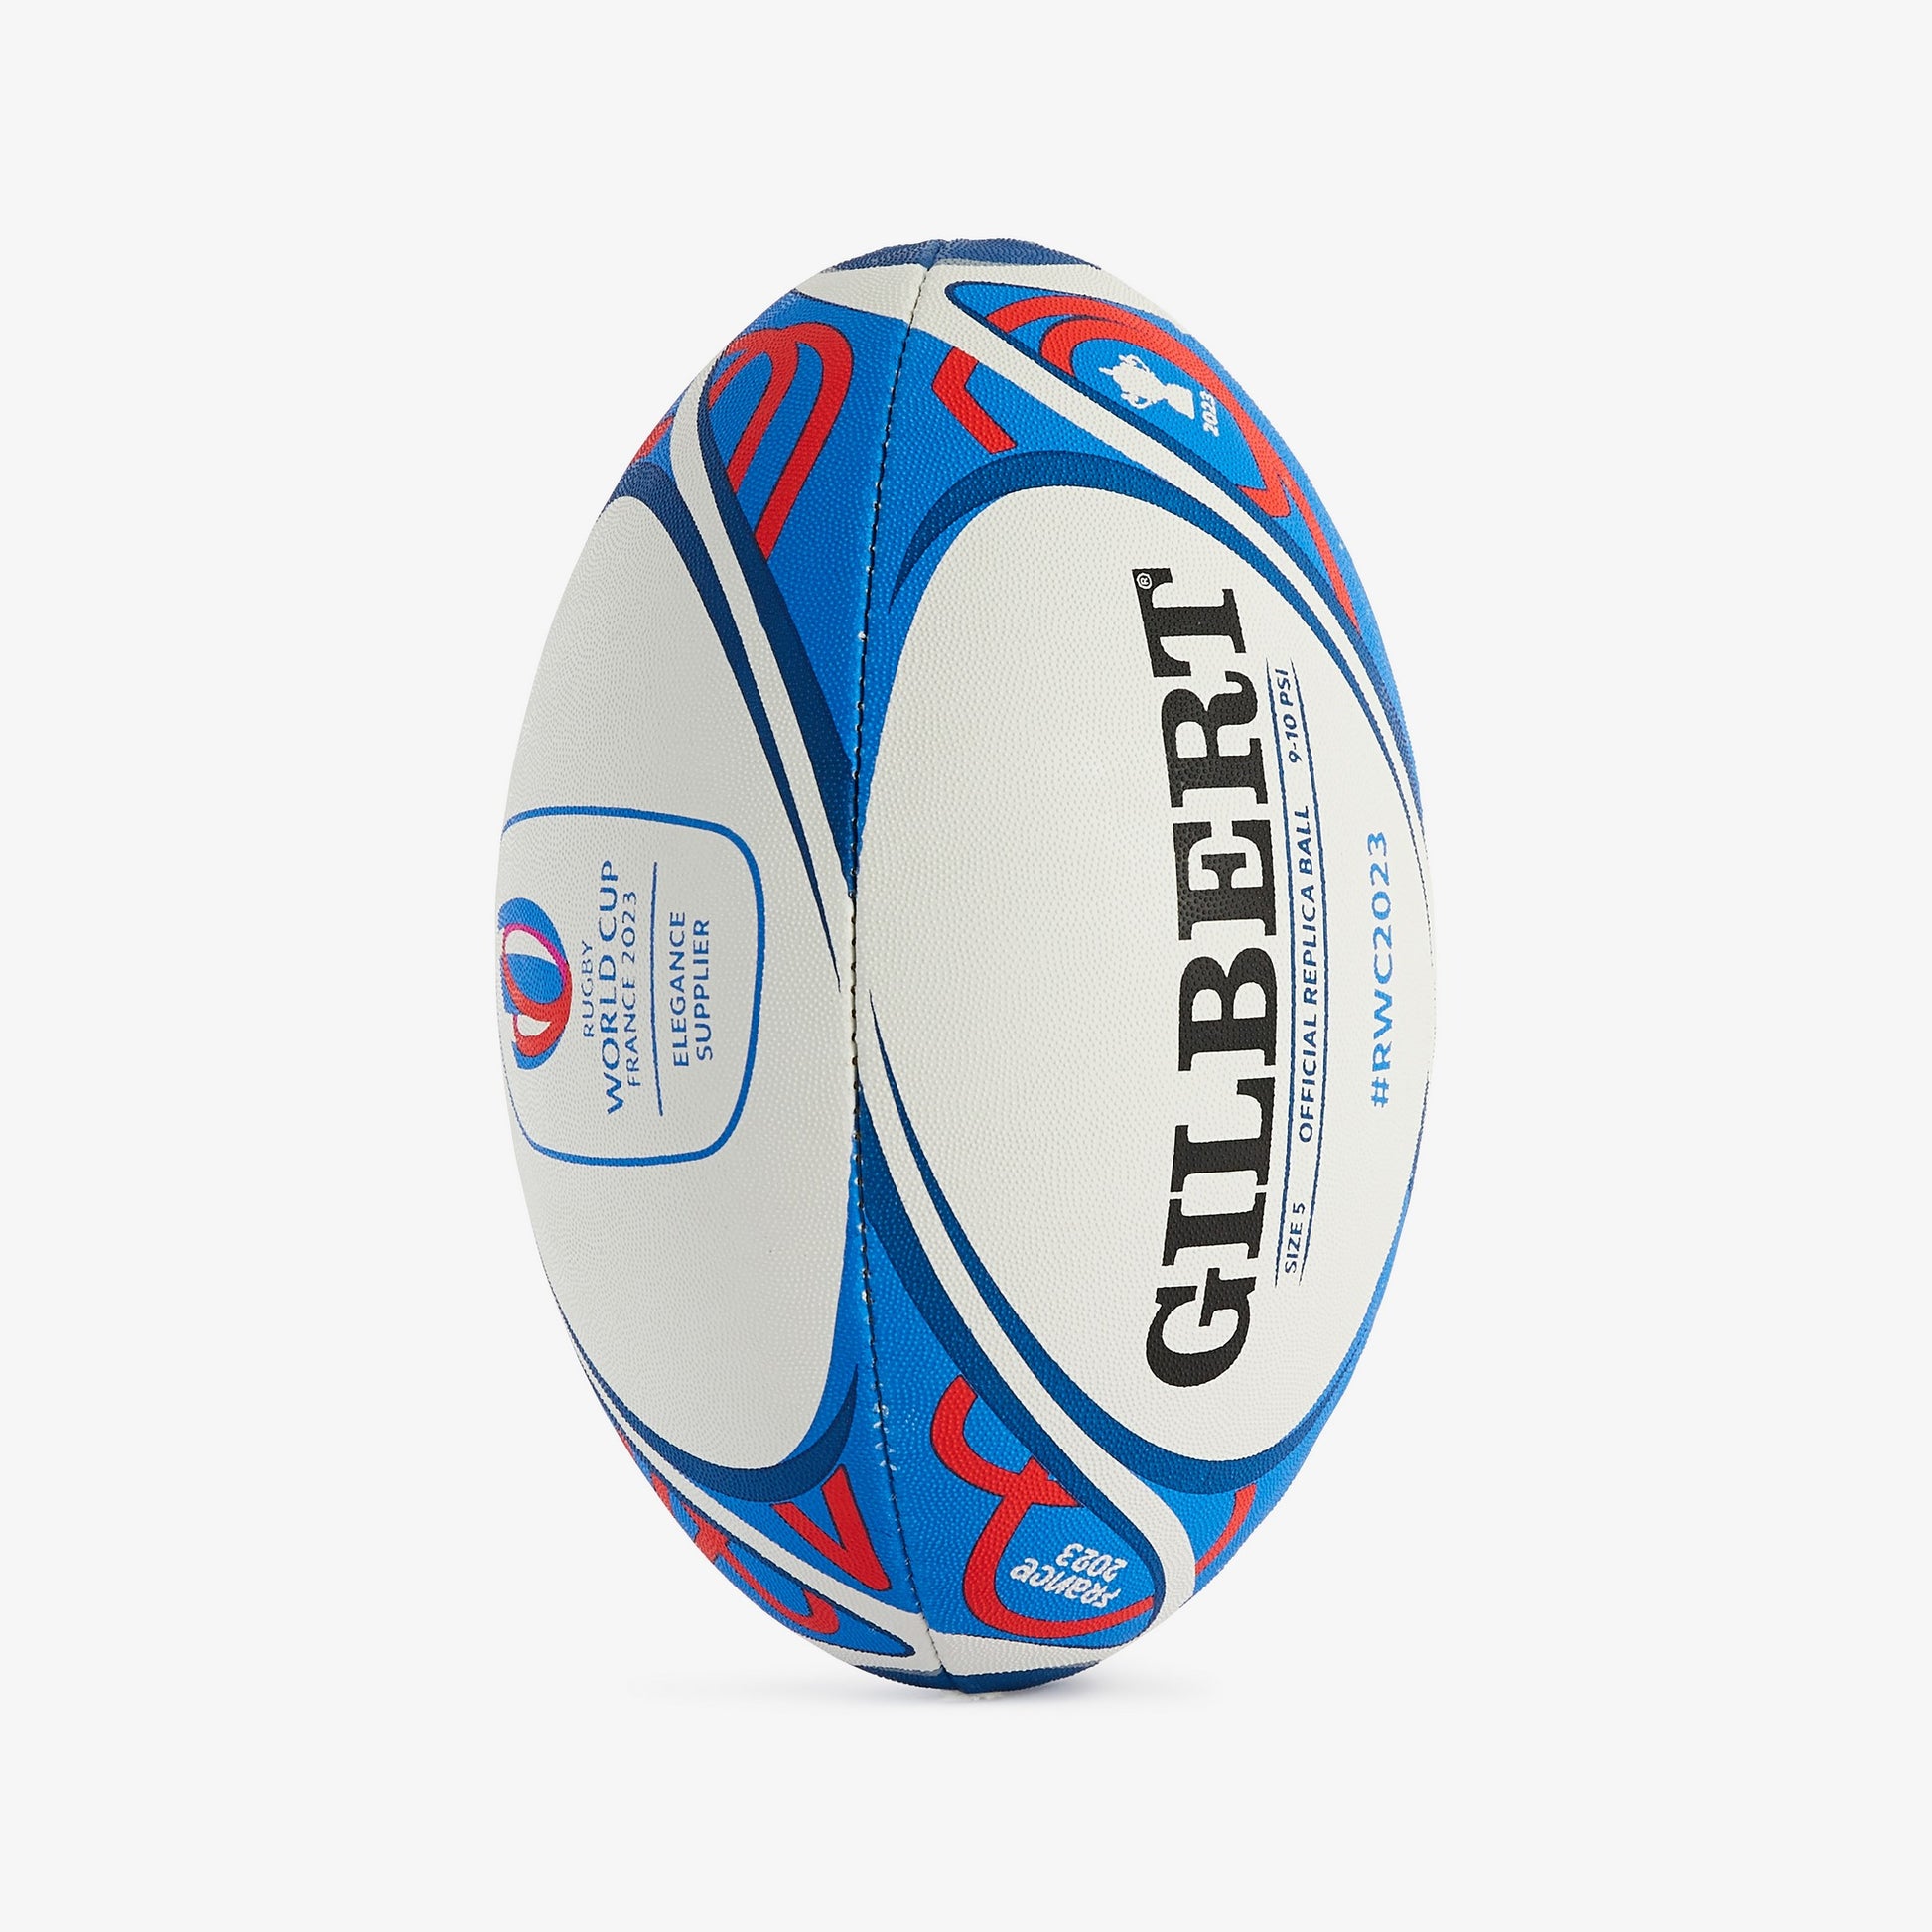 Ballon de rugby bleu x Gilbert – Eden Park